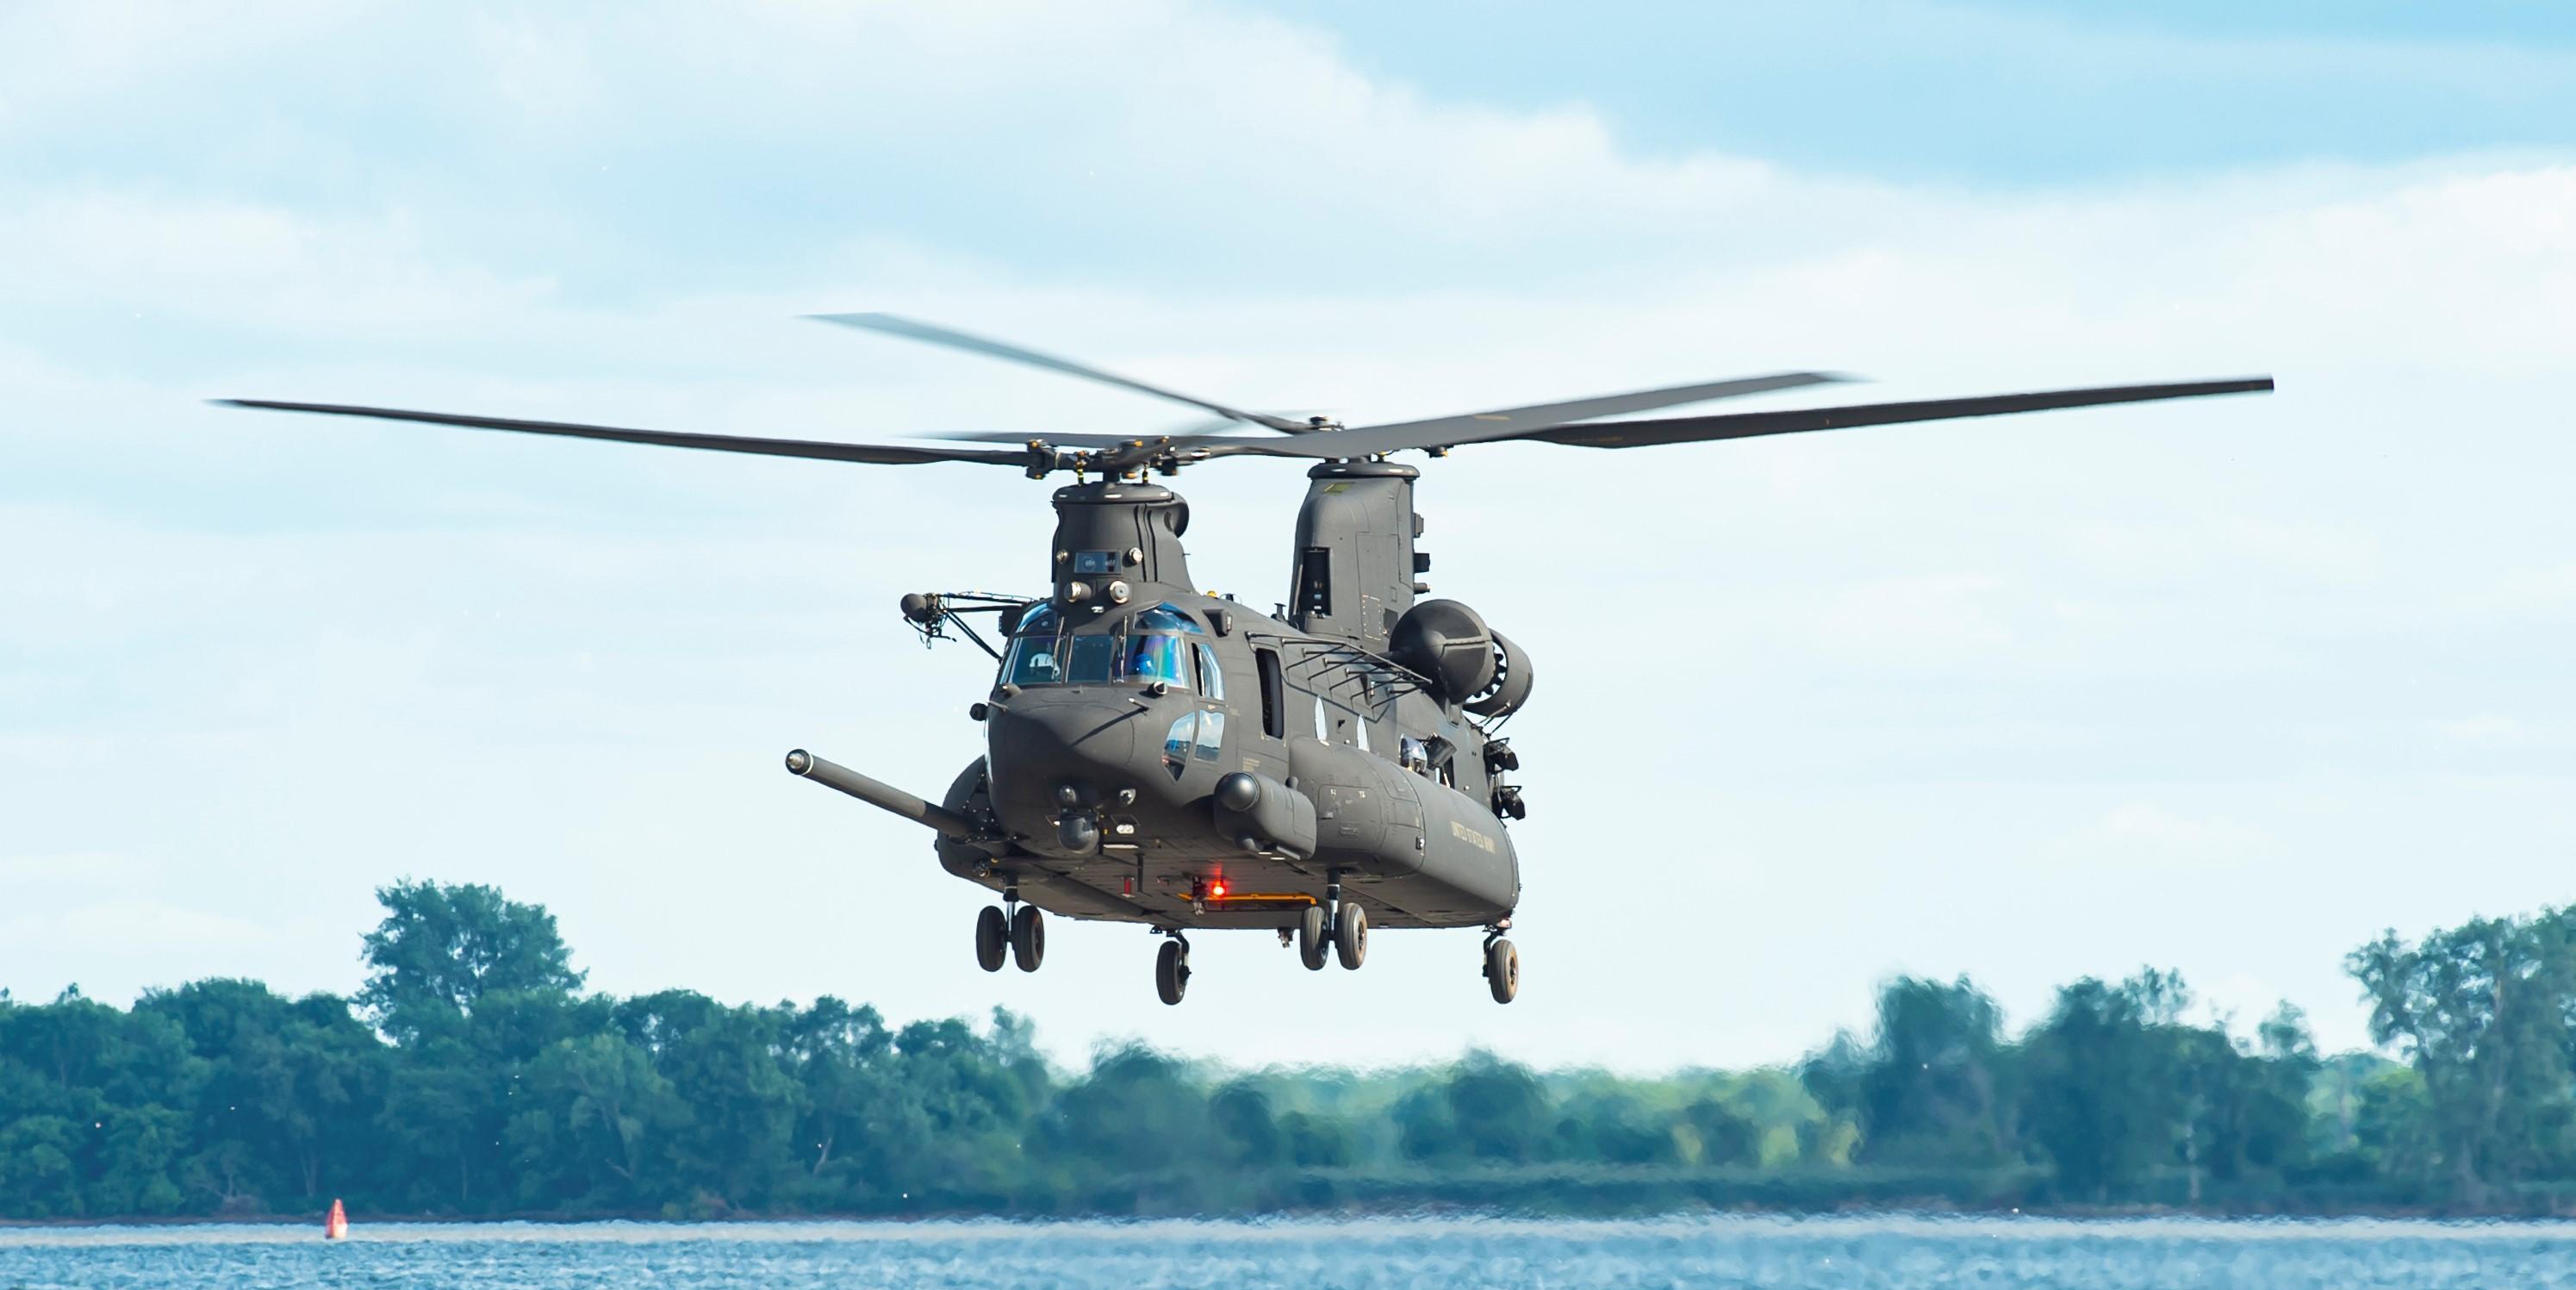 原创世界最强运输直升机,"支奴干"再次升级,运载能力十分强悍